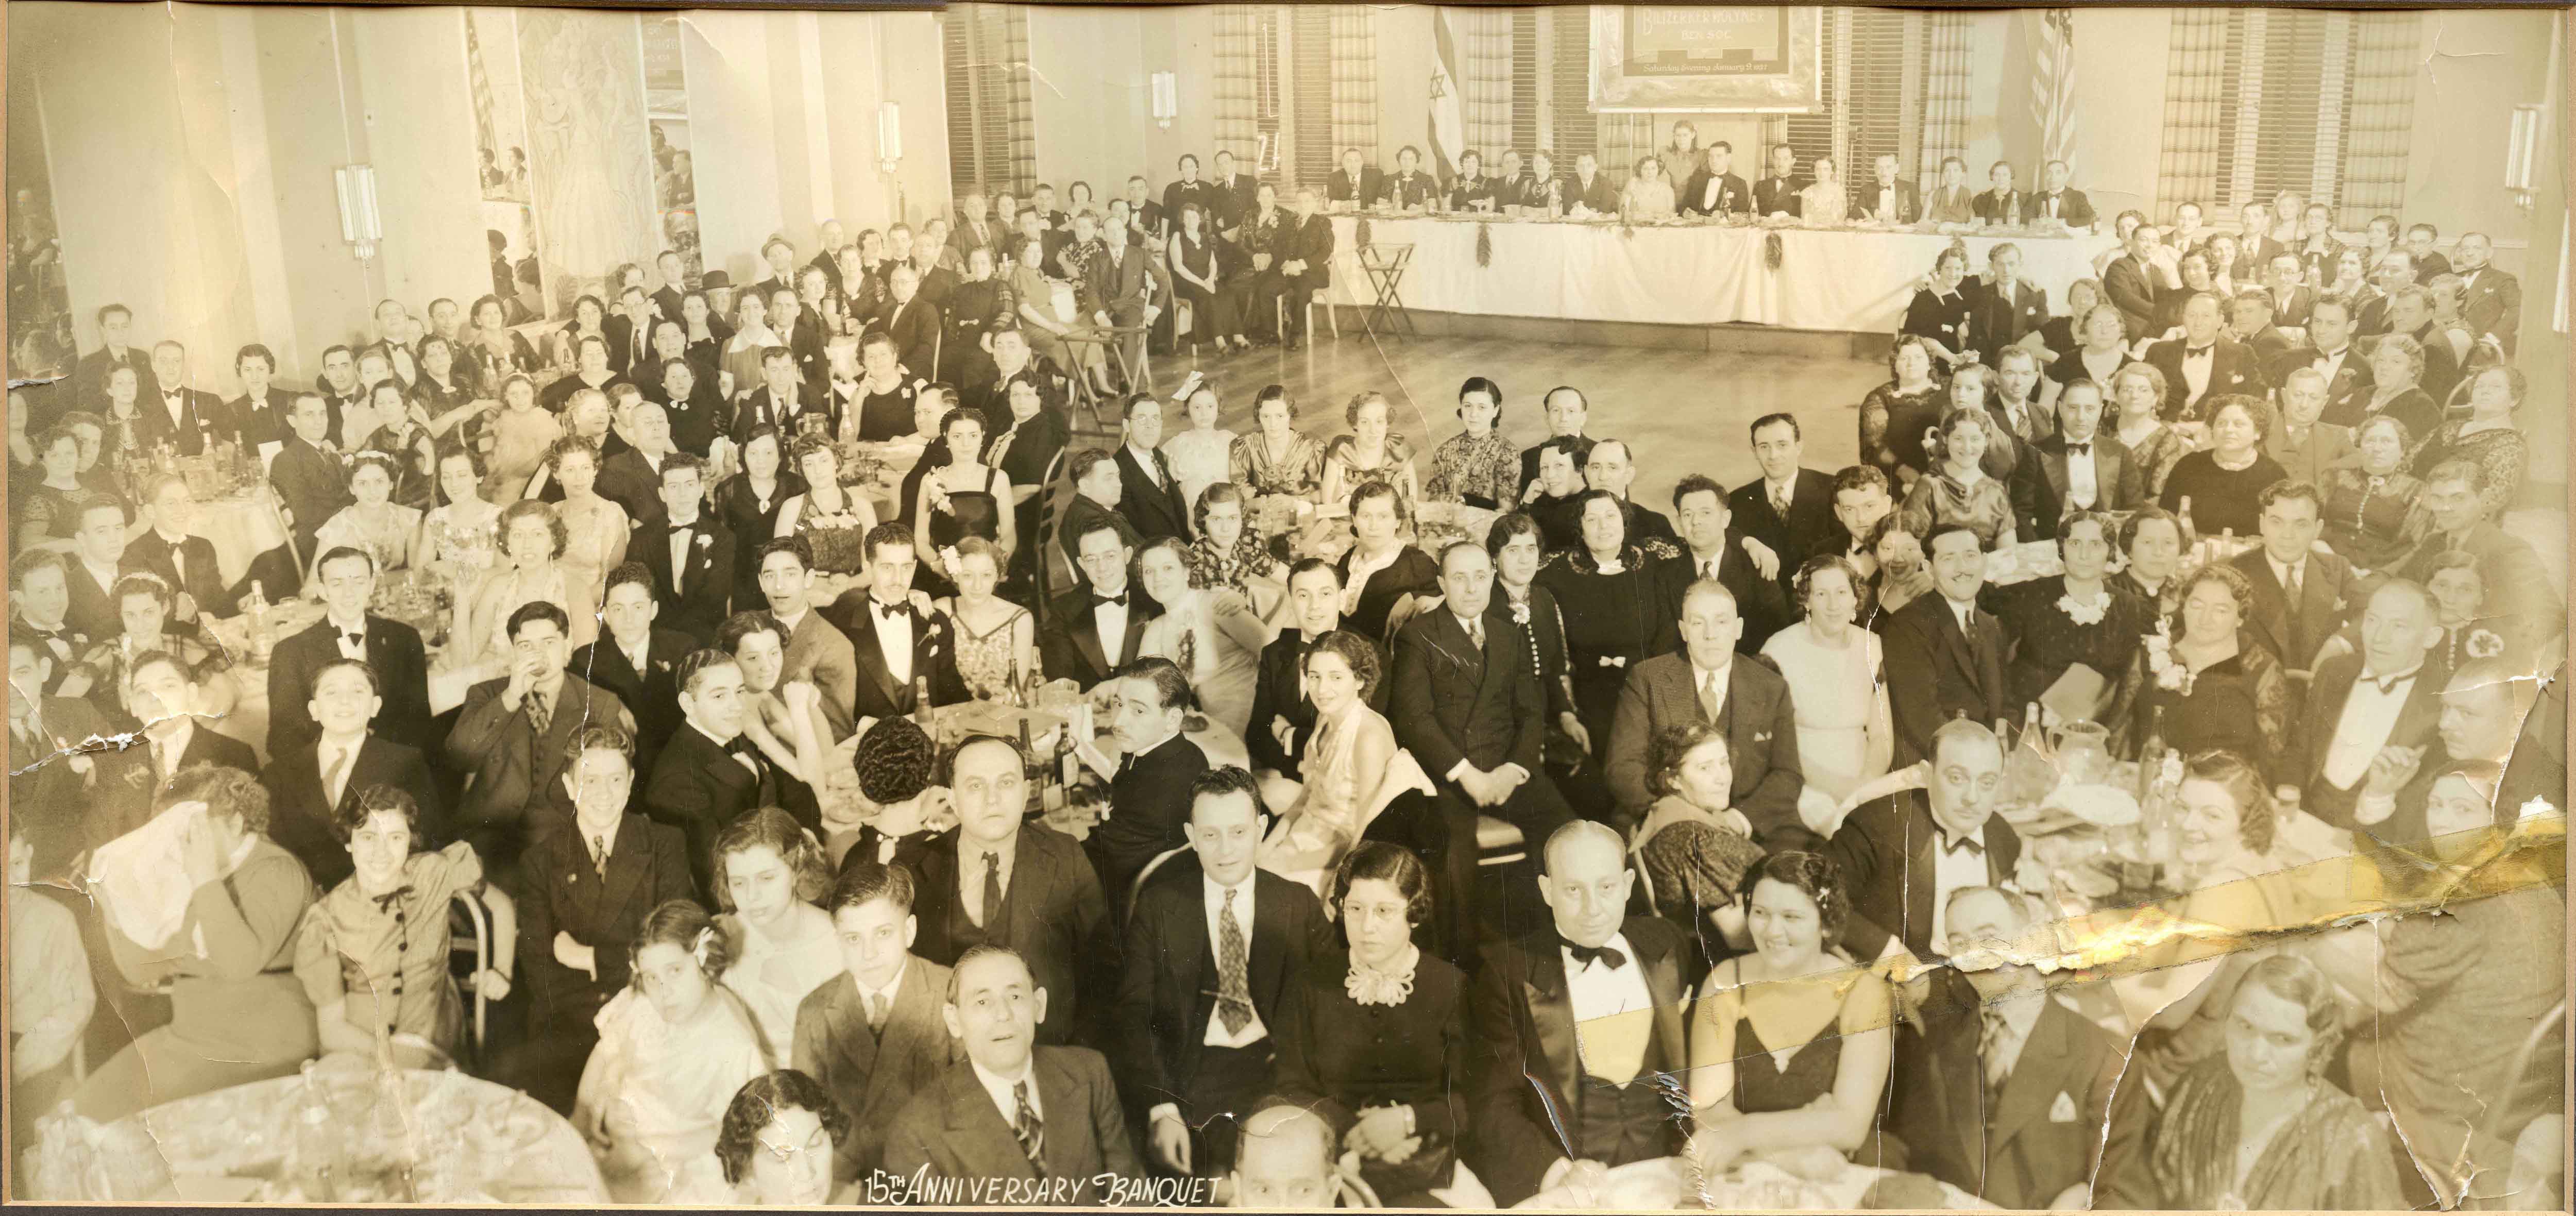 Belezerker Benevolent Society - 15th anniversary
                banquet, 1937